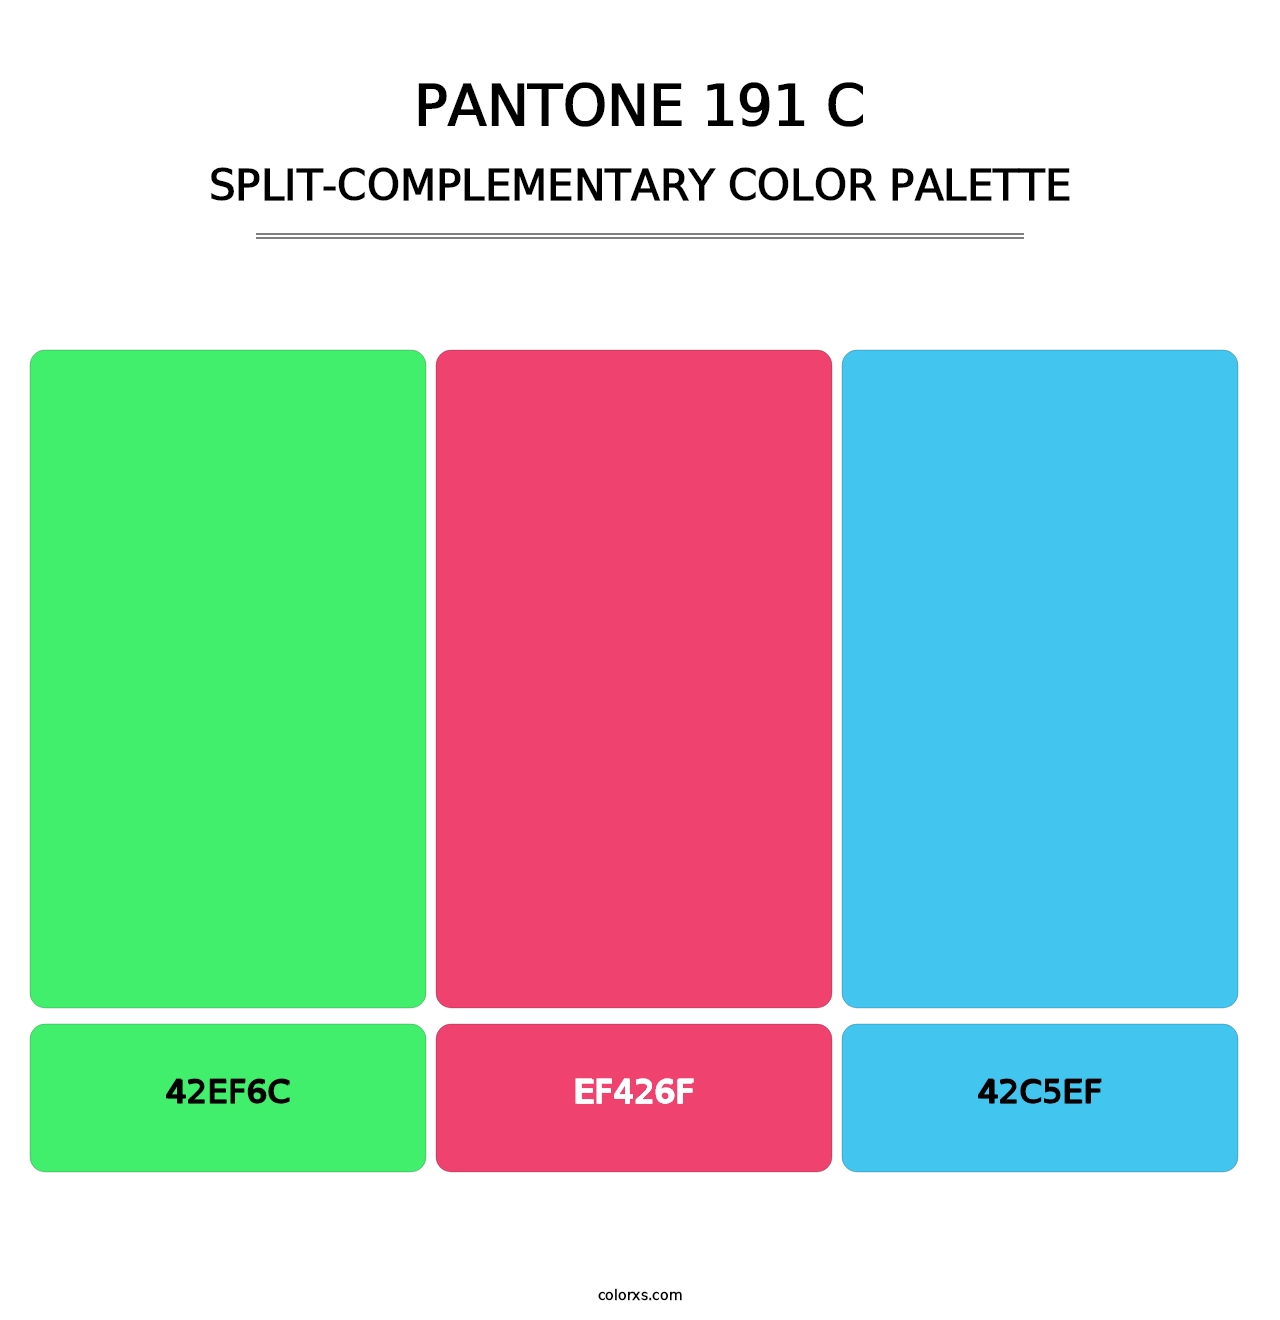 PANTONE 191 C - Split-Complementary Color Palette